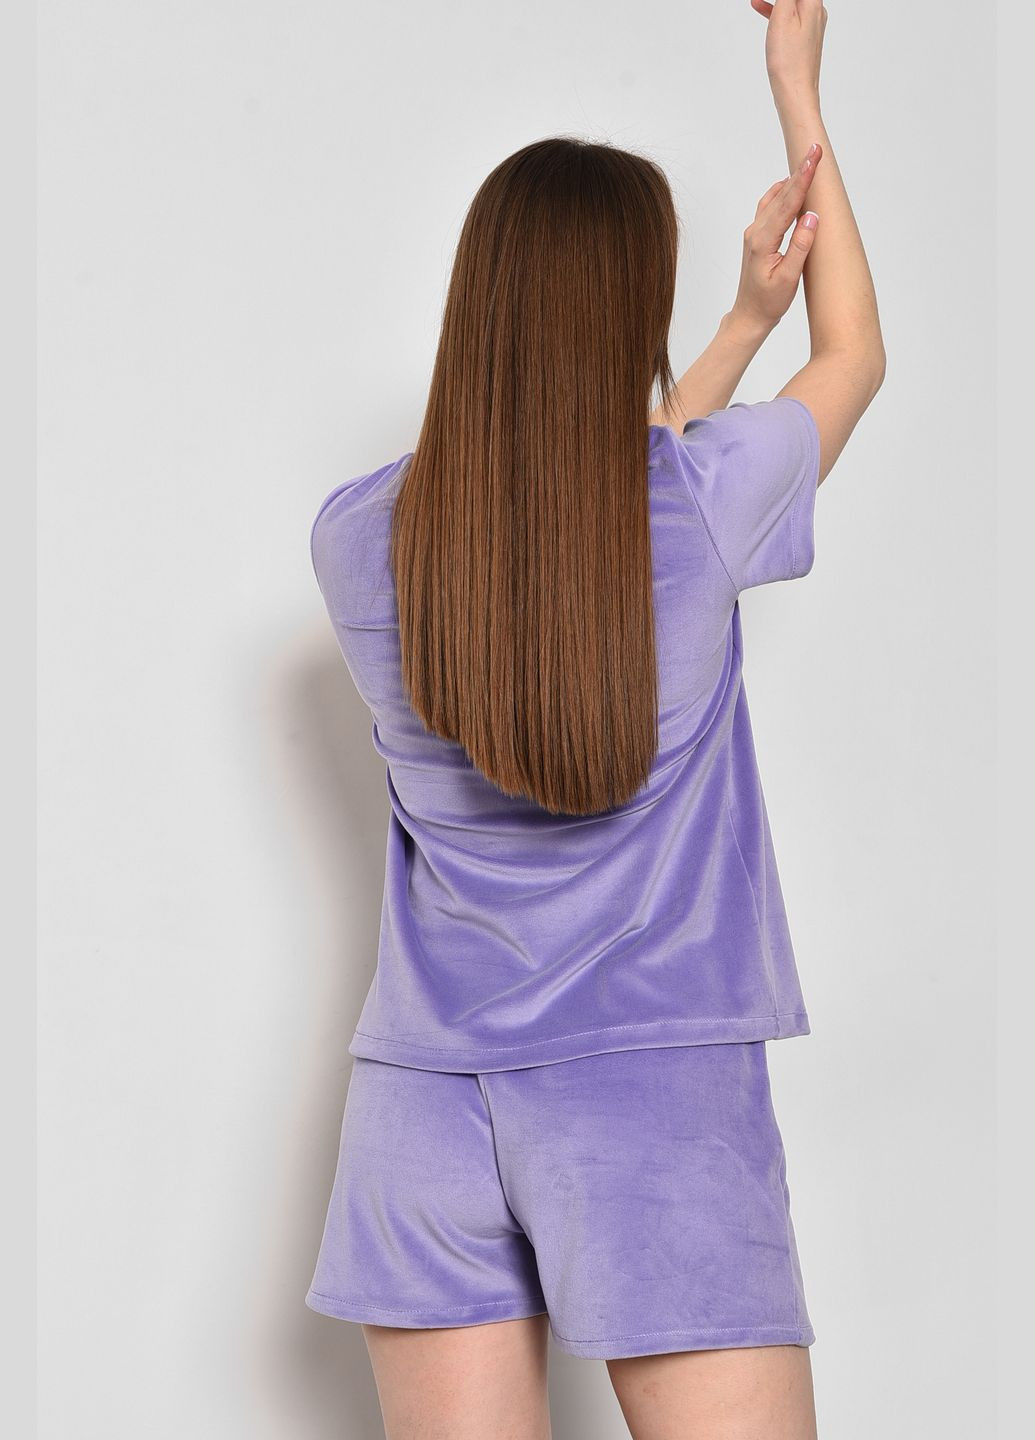 Фиолетовая всесезон пижама женская велюровая фиолетового цвета футболка + шорты Let's Shop